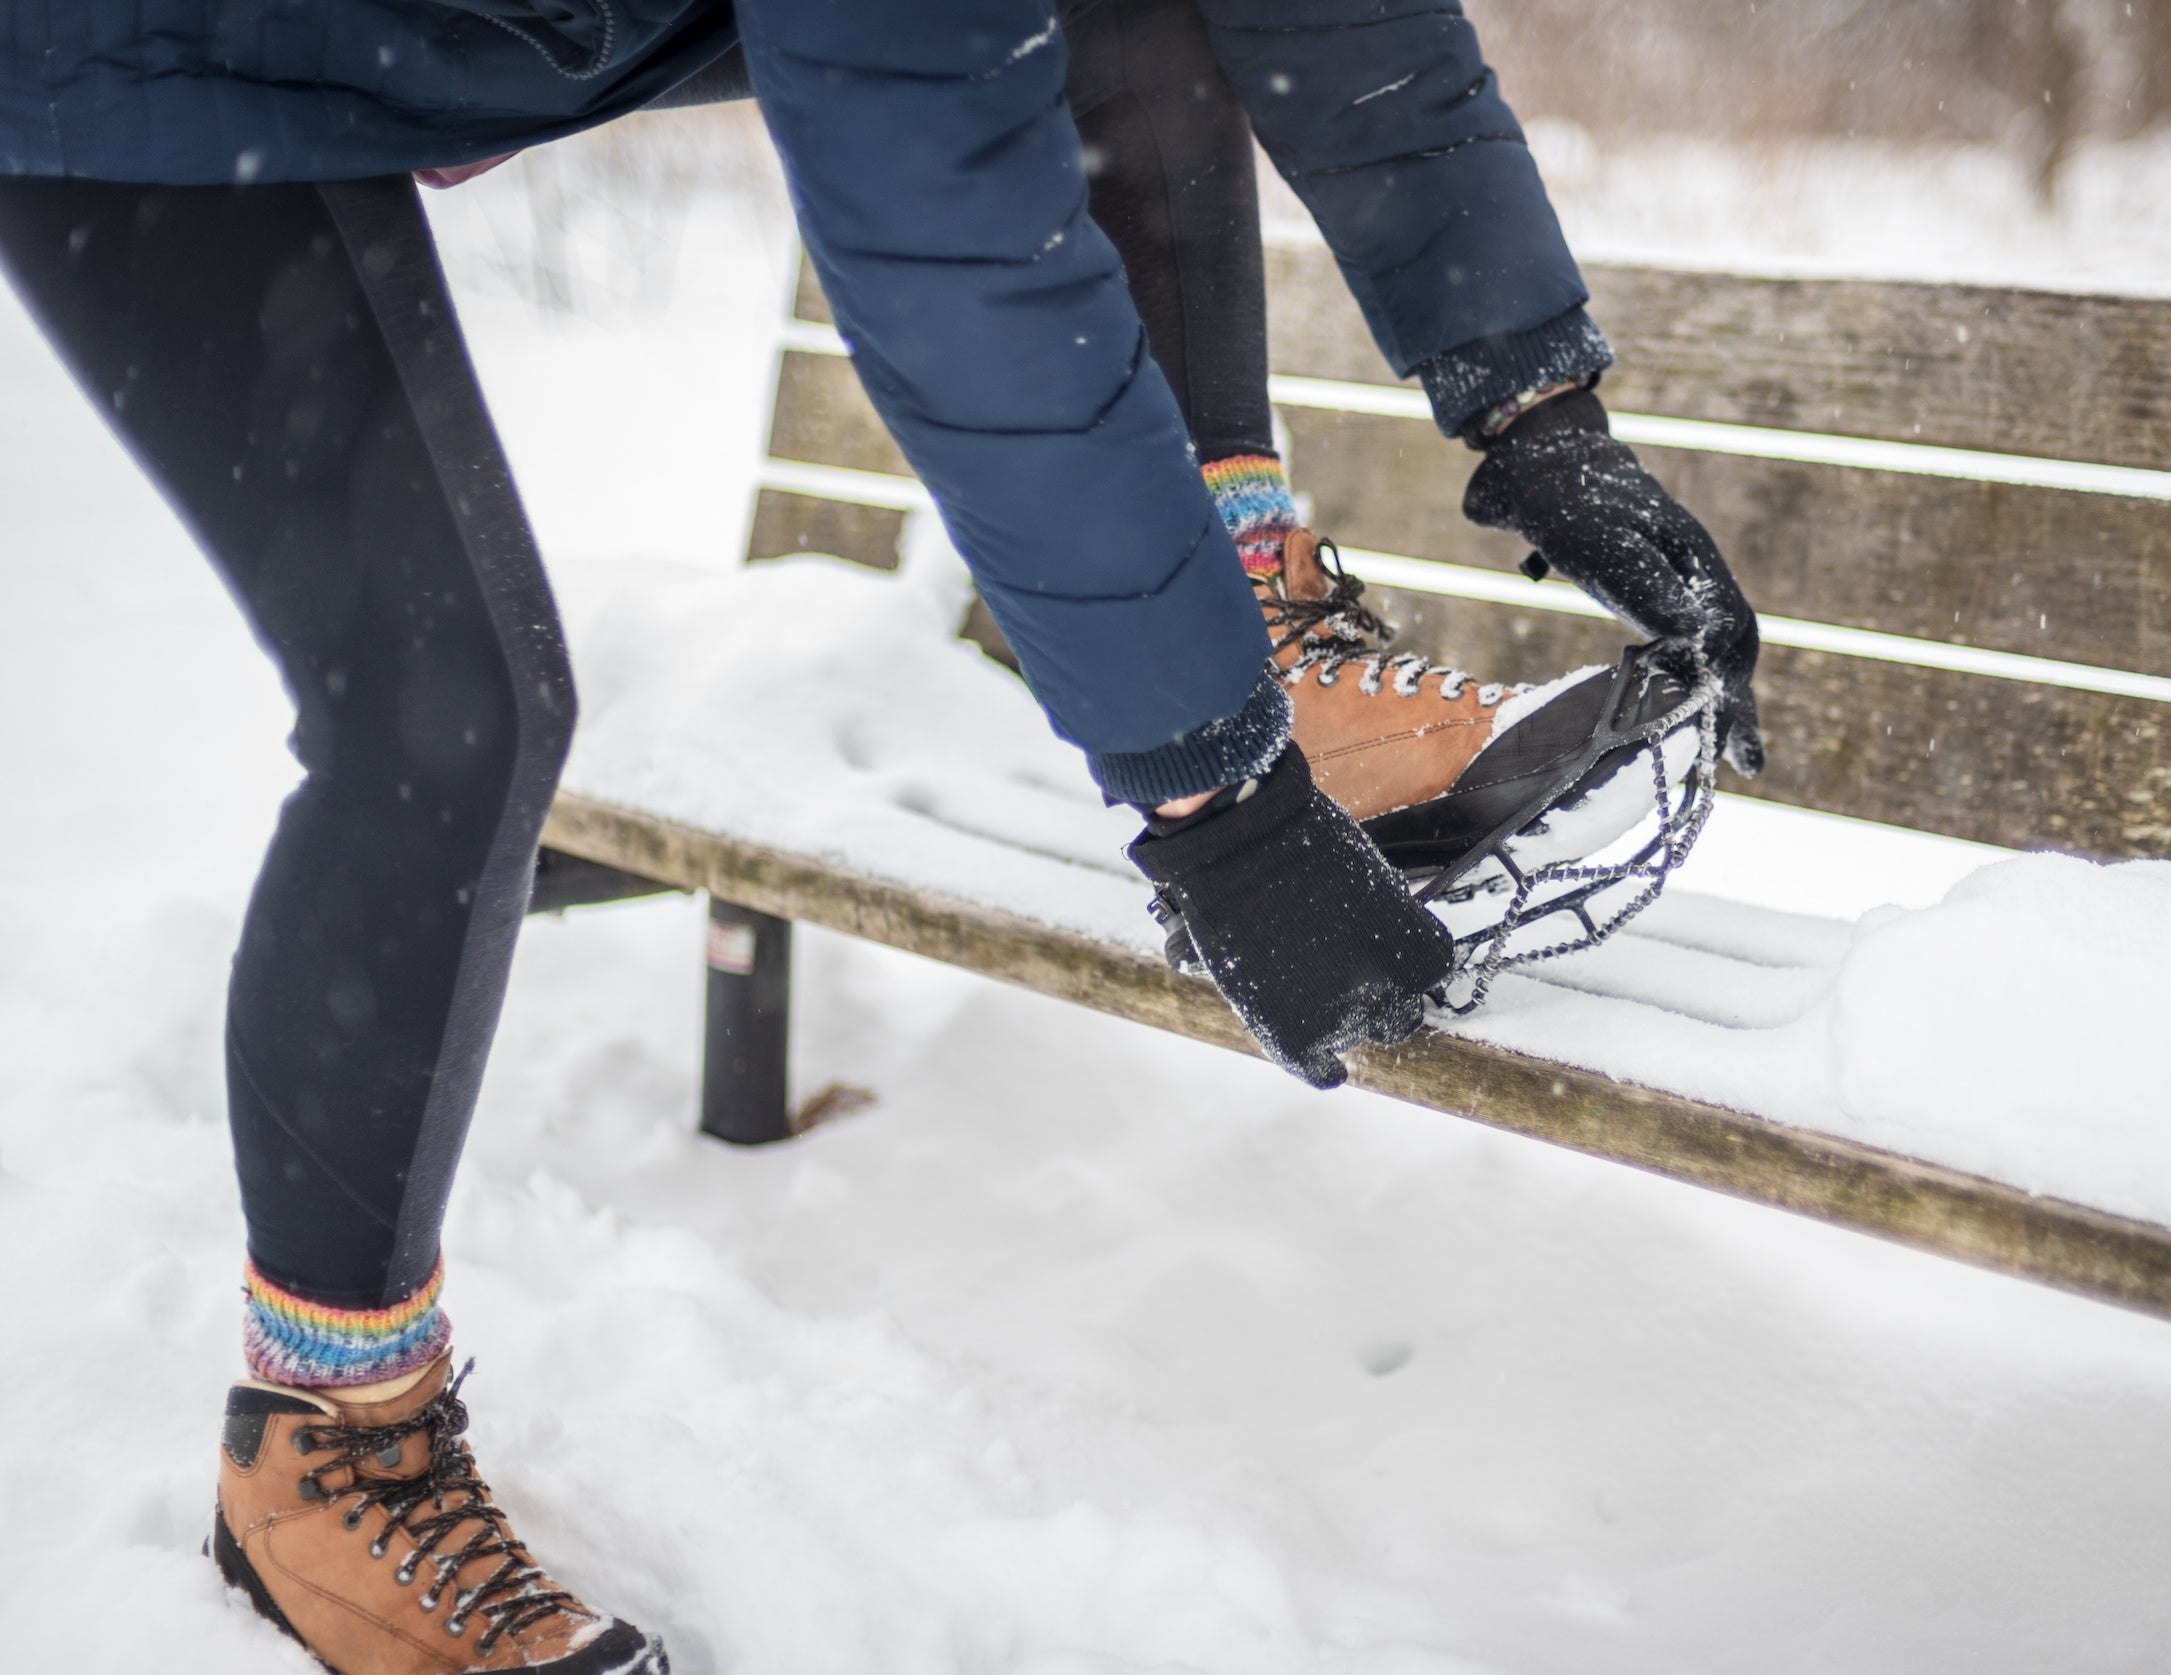 Chaîne anti-verglas pour chaussures pour marcher dans la neige et